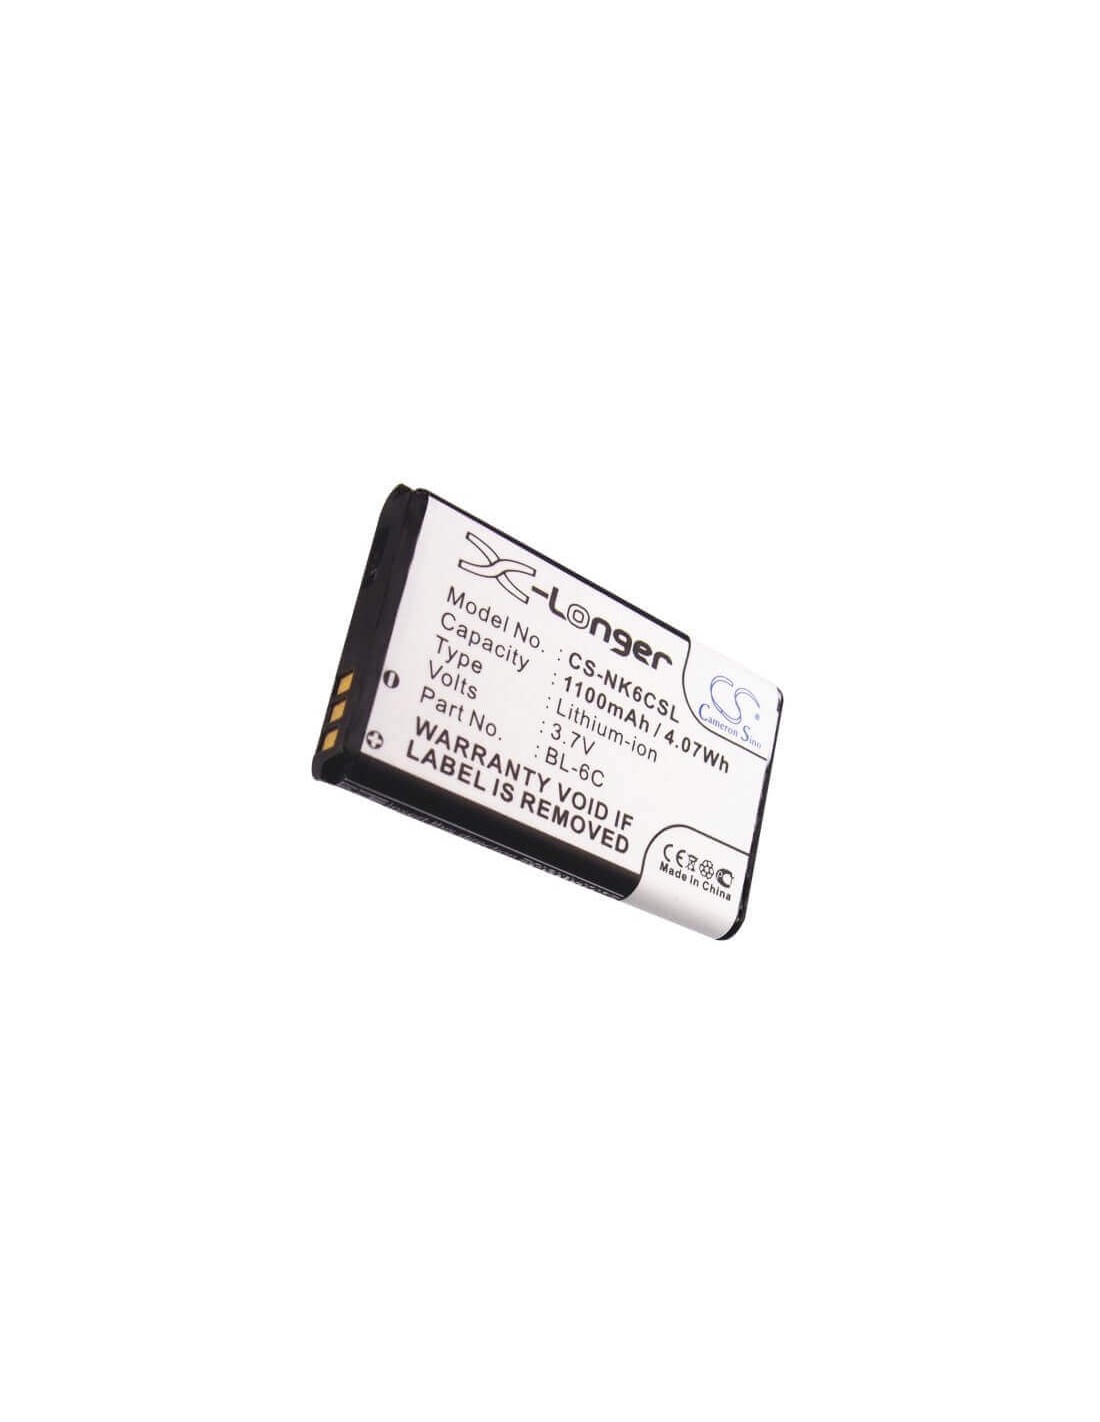 Battery for Digipo Hdv-v16, Hddv-mf506 3.7V, 1100mAh - 4.07Wh